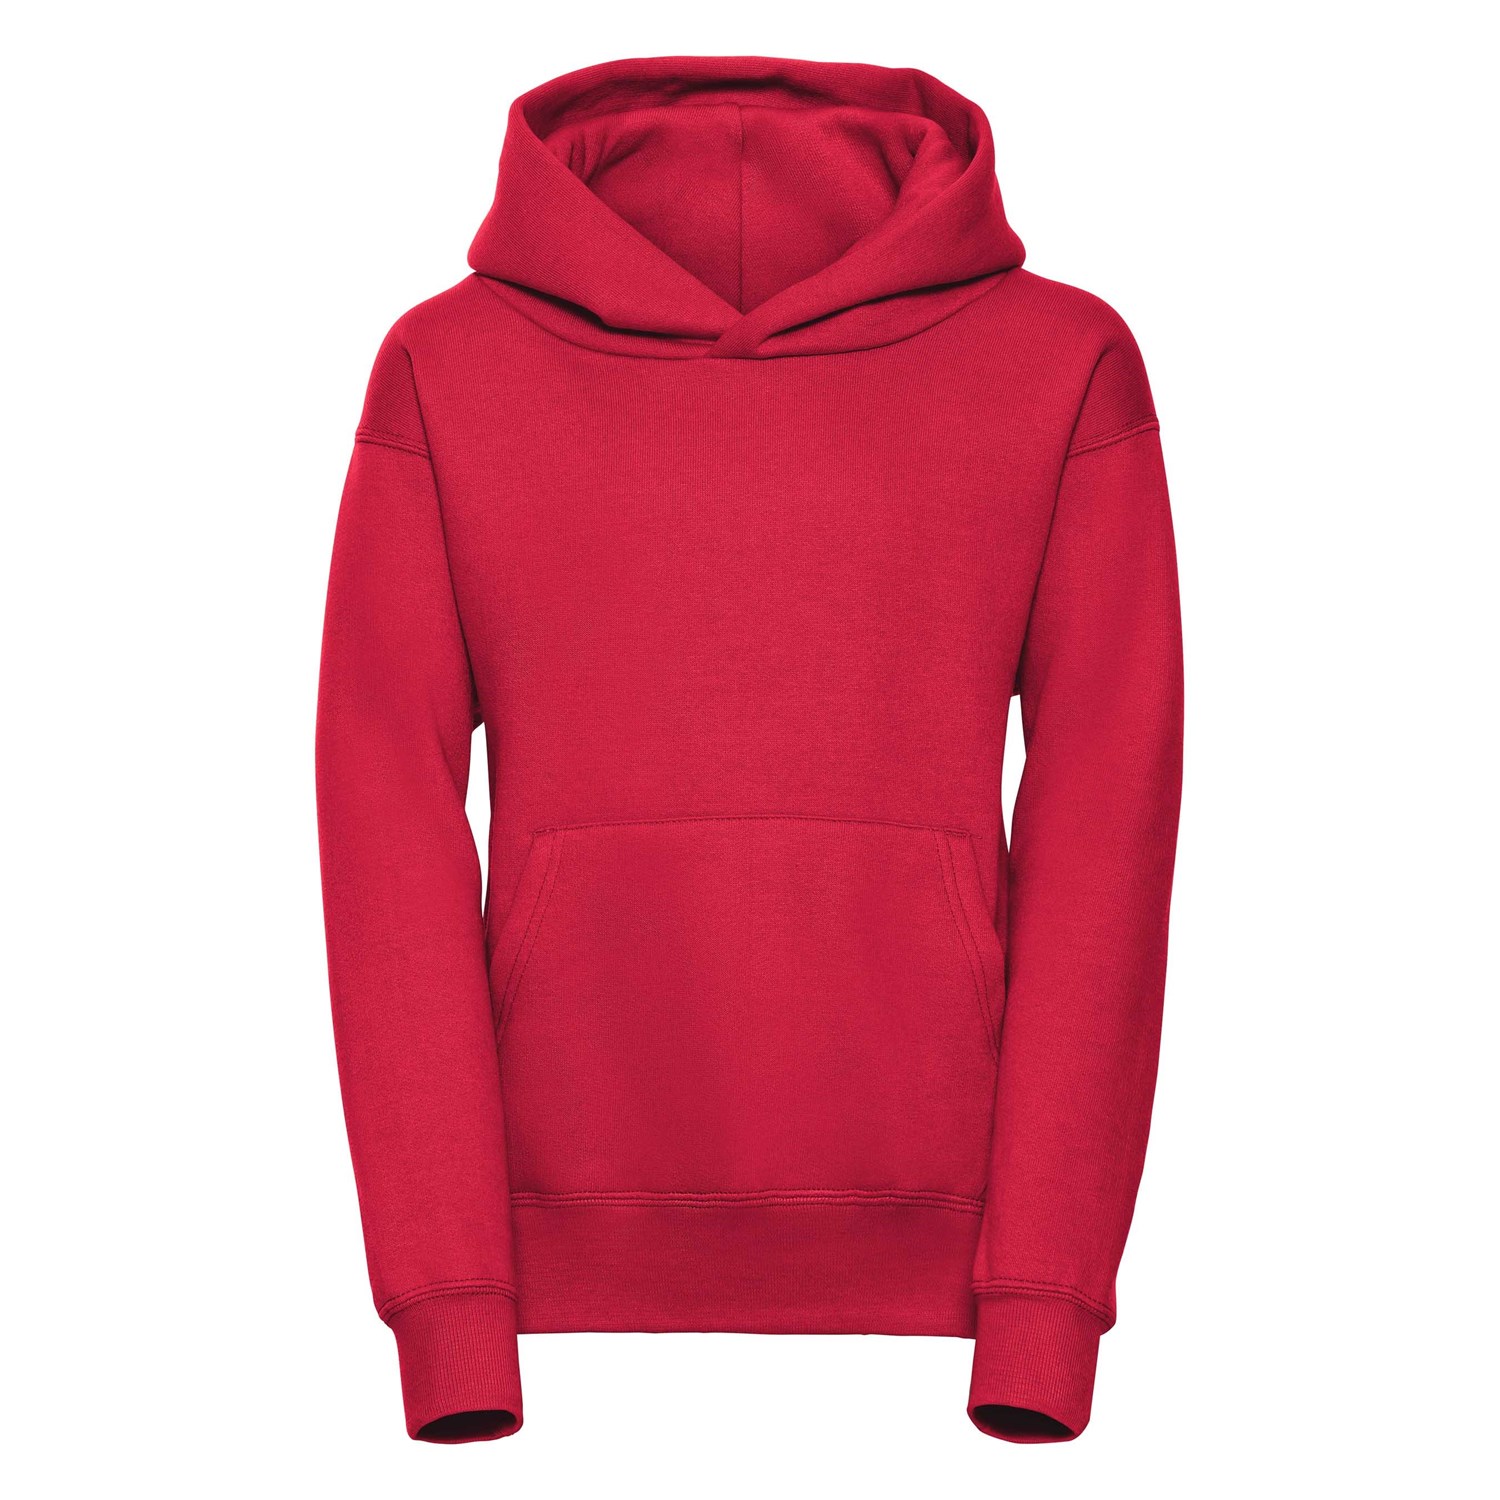 Hooded Sweatshirt R575B 50/50 295g